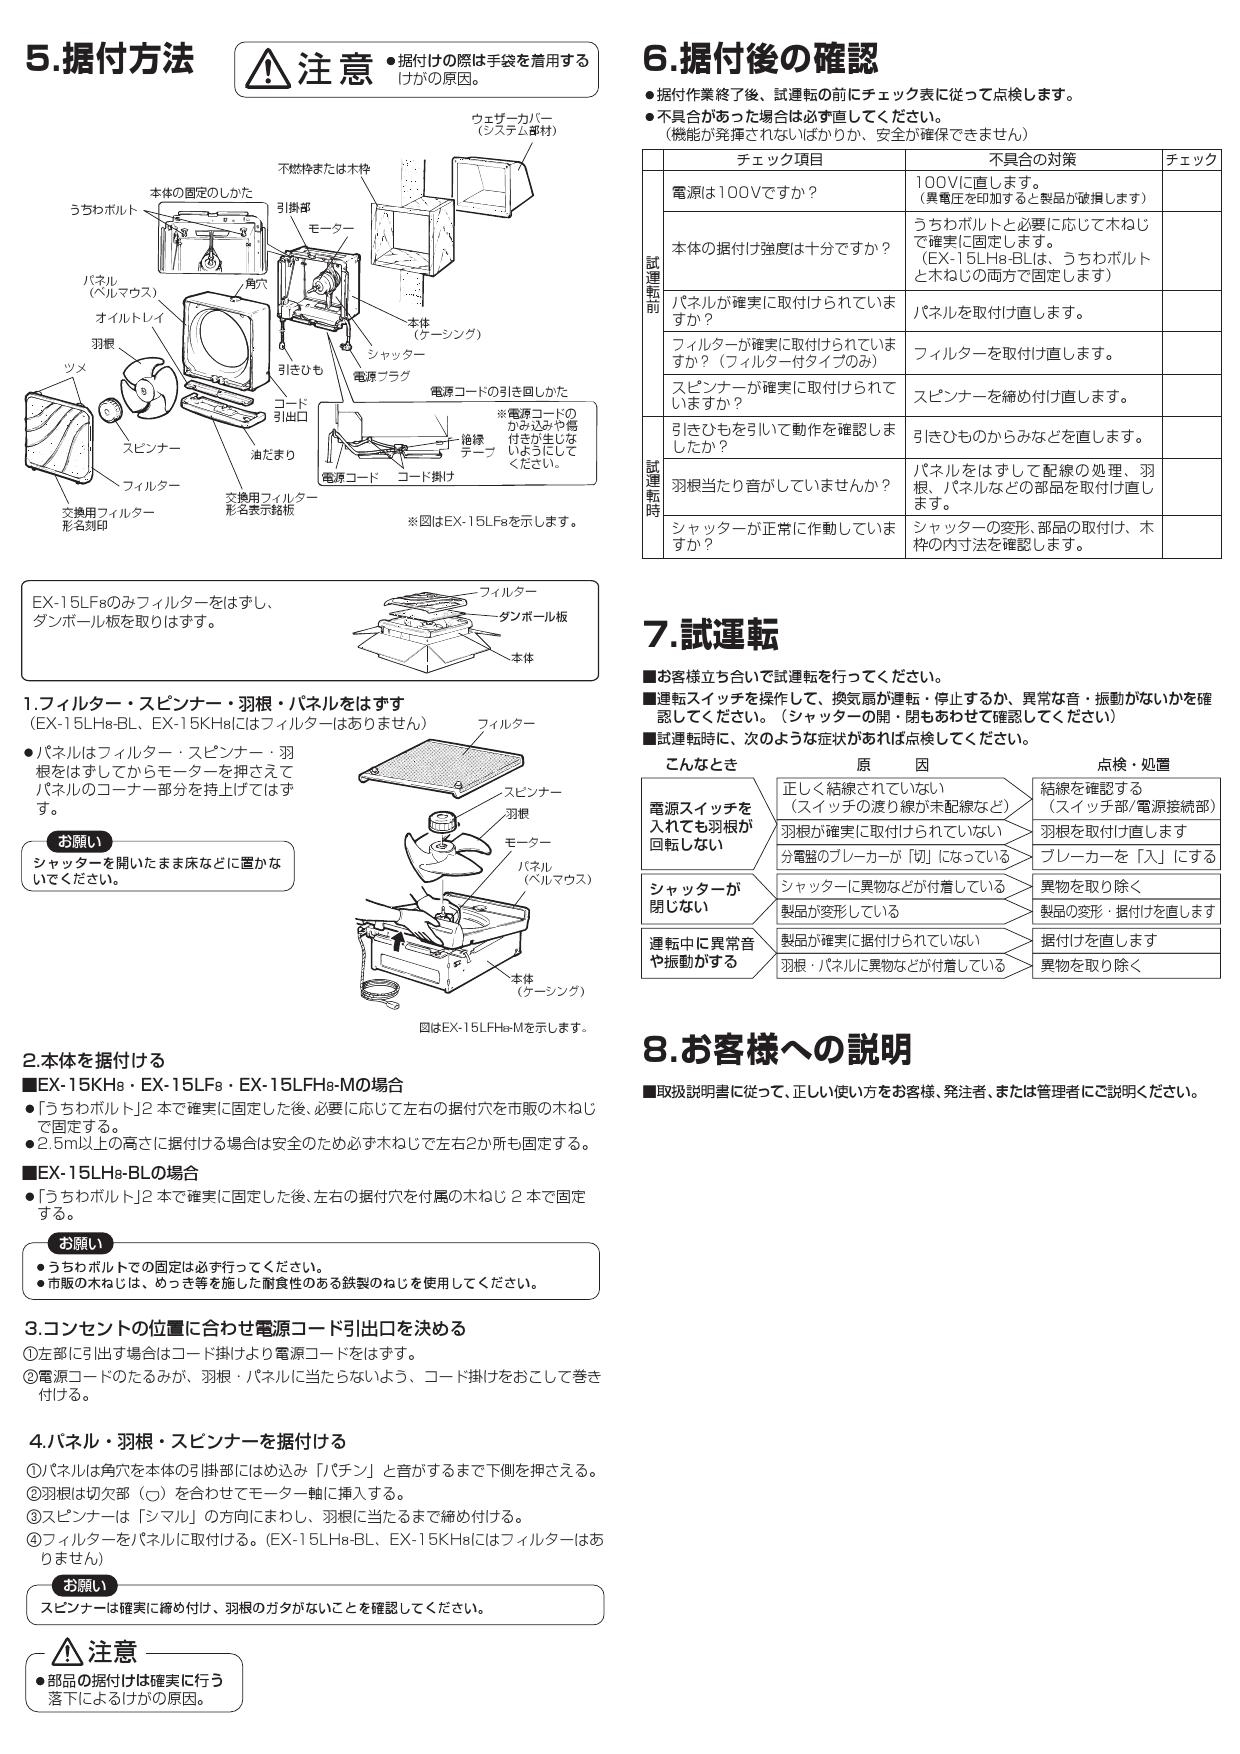 三菱電機 EX-15LF8取扱説明書 納入仕様図 | 通販 プロストア ダイレクト